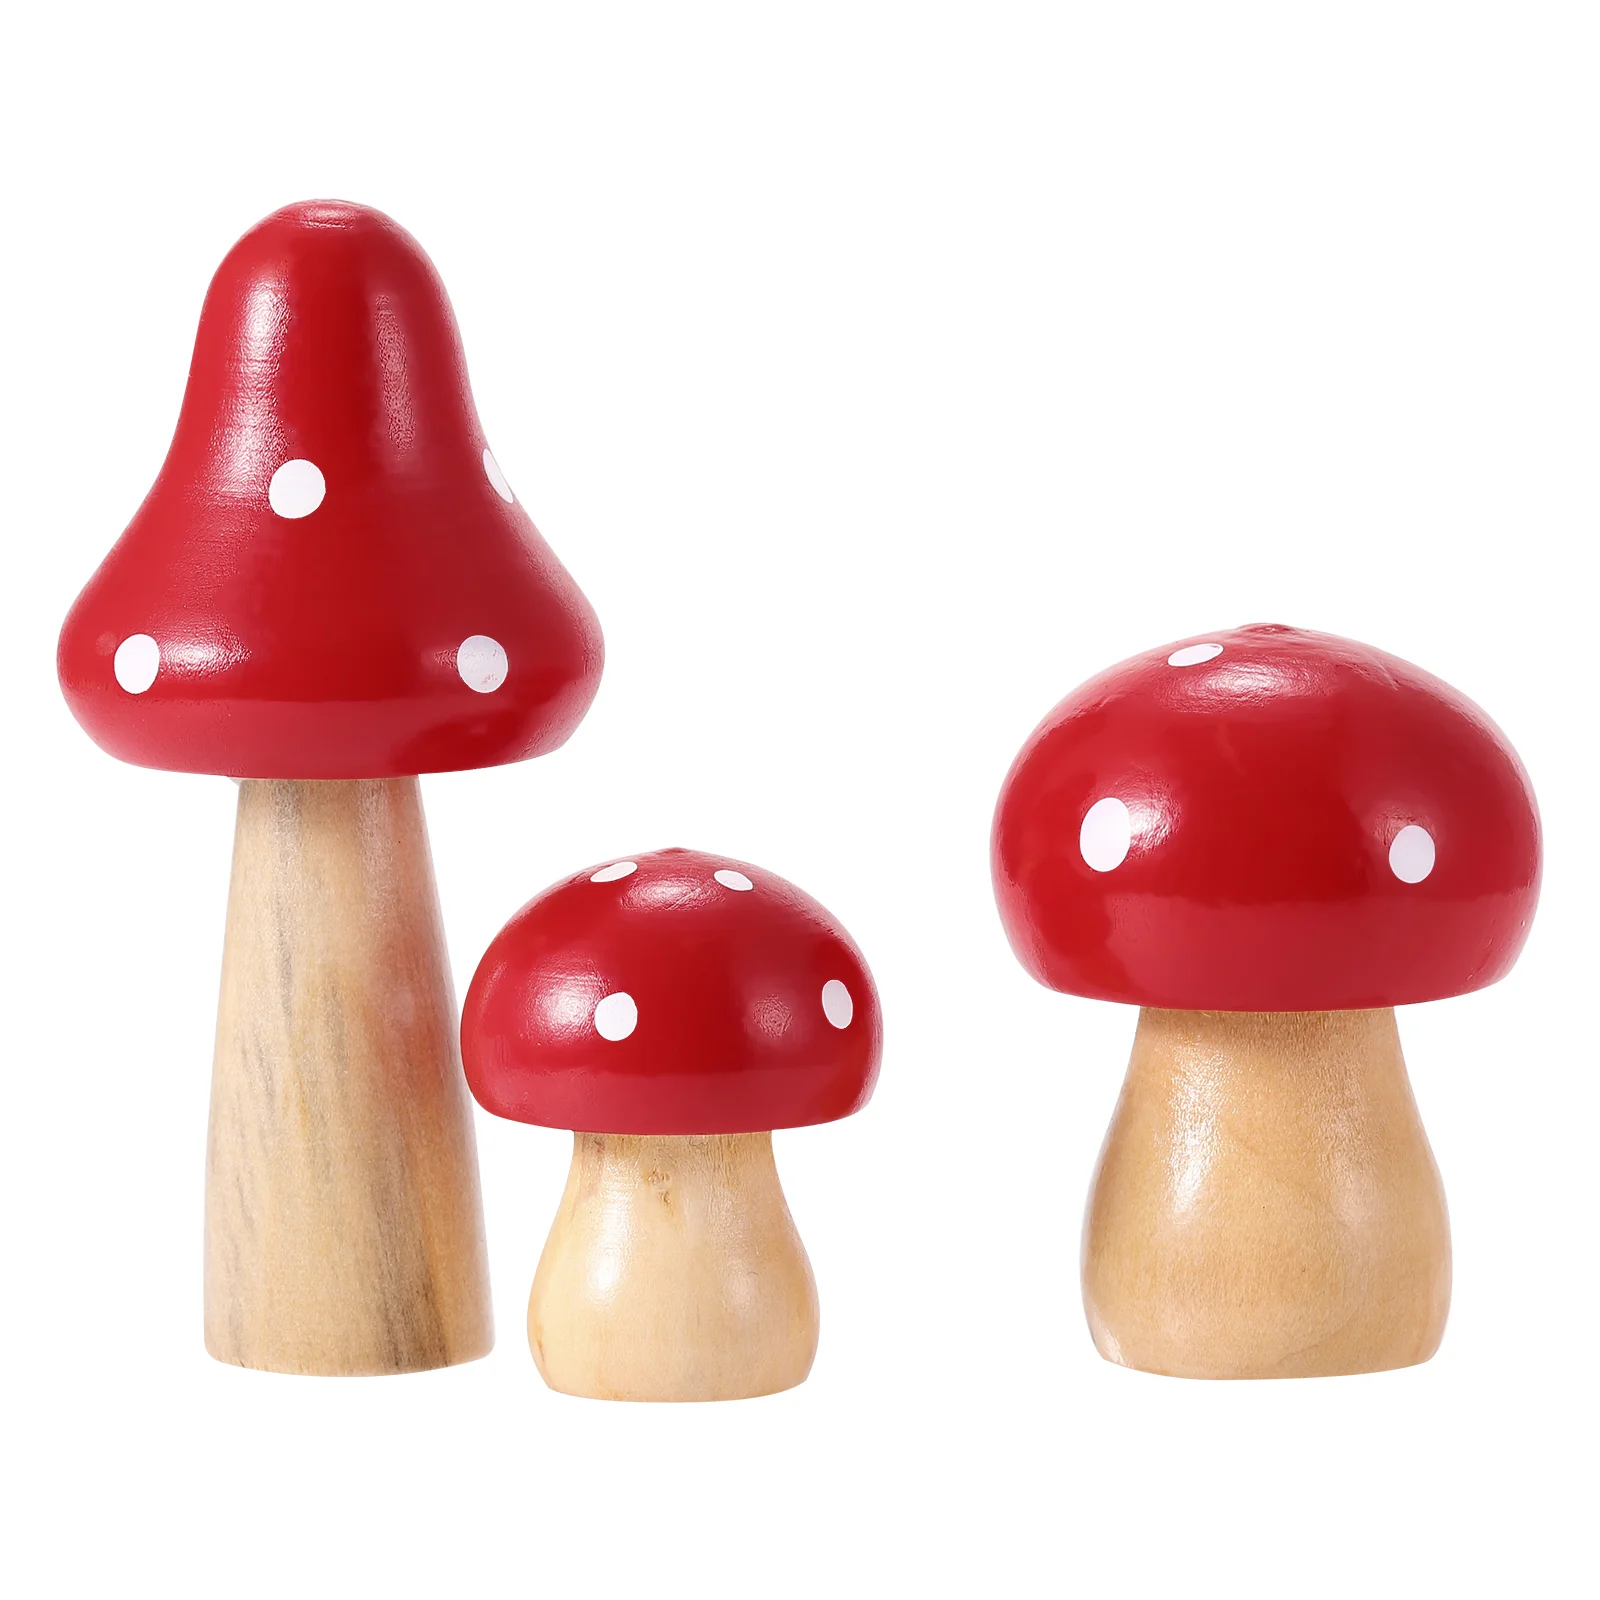 

Mushrooms Decor Miniature Fairy Figurines Mushroom Home Decor Tub Mushroom Outdoor Tabletop Decor